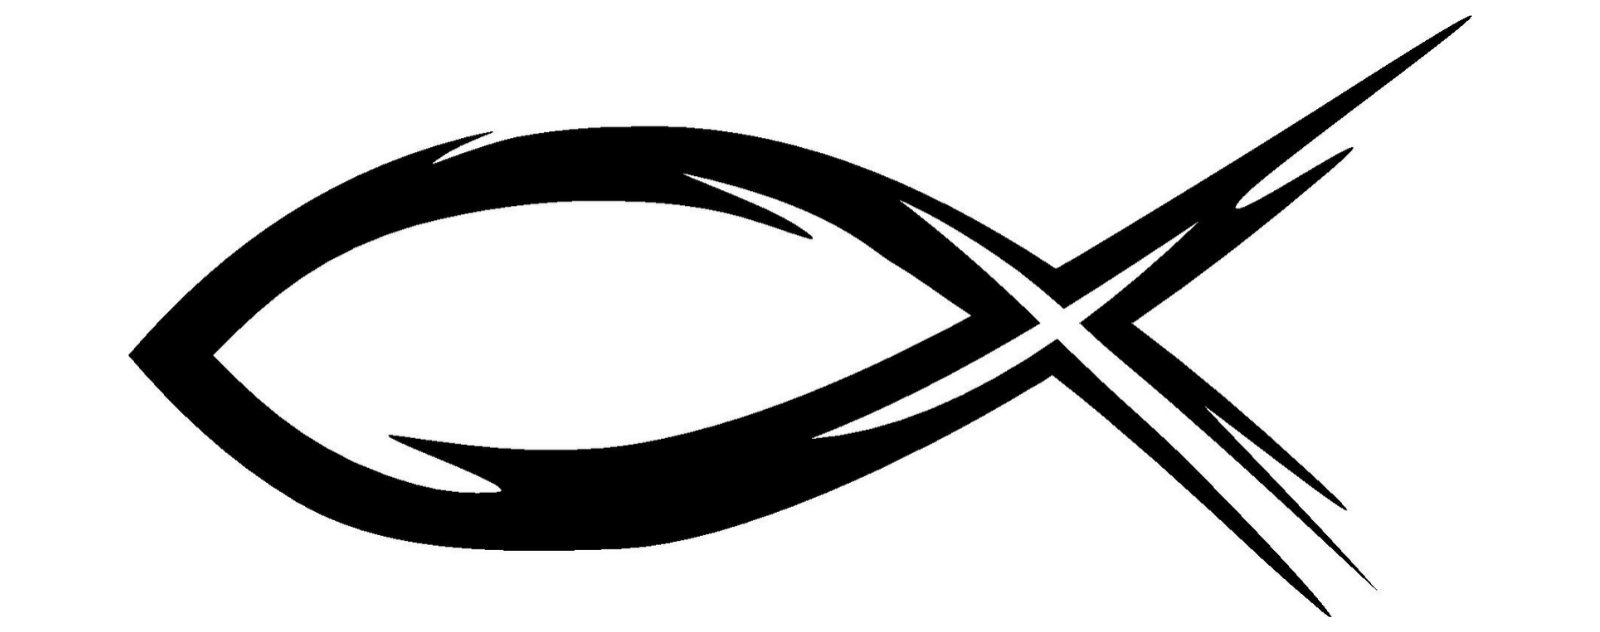 ichthus symbol